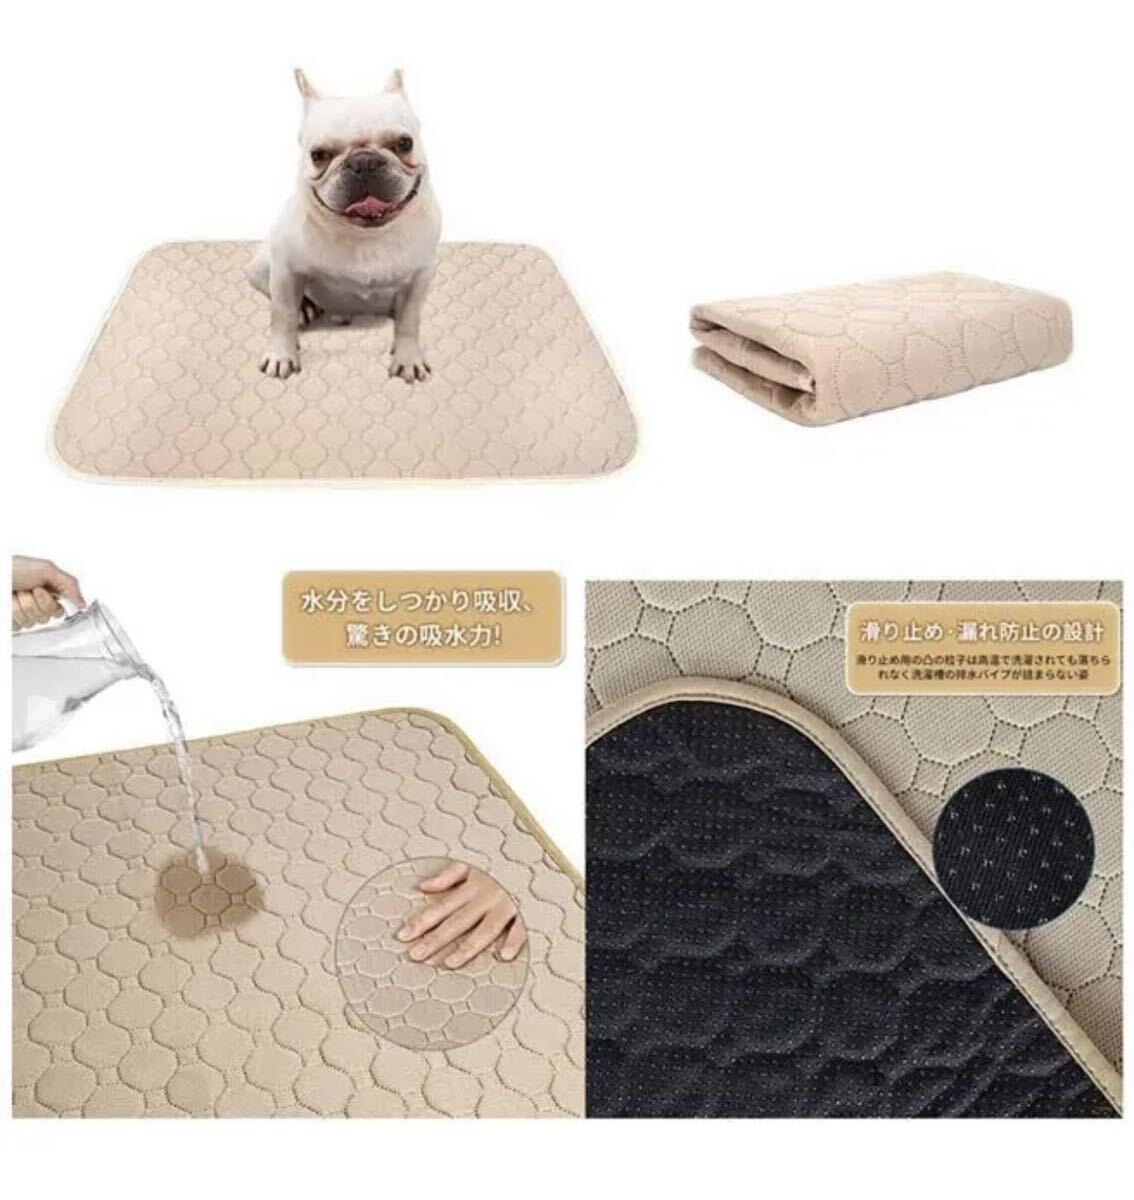 ペット用おしっこマット 犬 ベッド 防水 速乾 洗える2枚ペット用 ベージュ